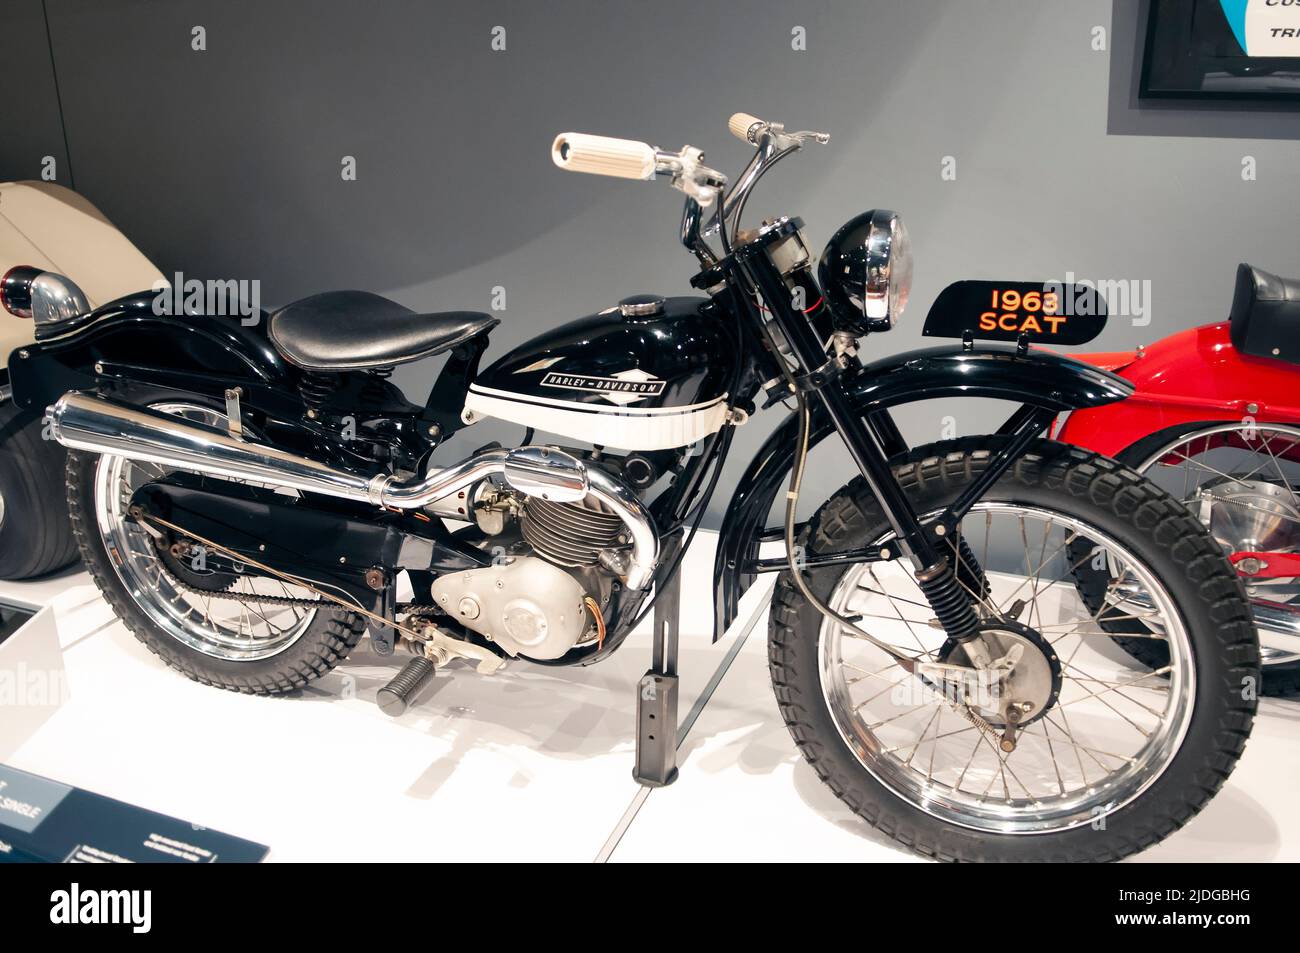 Una motocicletta Scat Harley Davidson del 1963 come visto nel museo Harley Davidson a Milwaukee, Wisconsin. Foto Stock